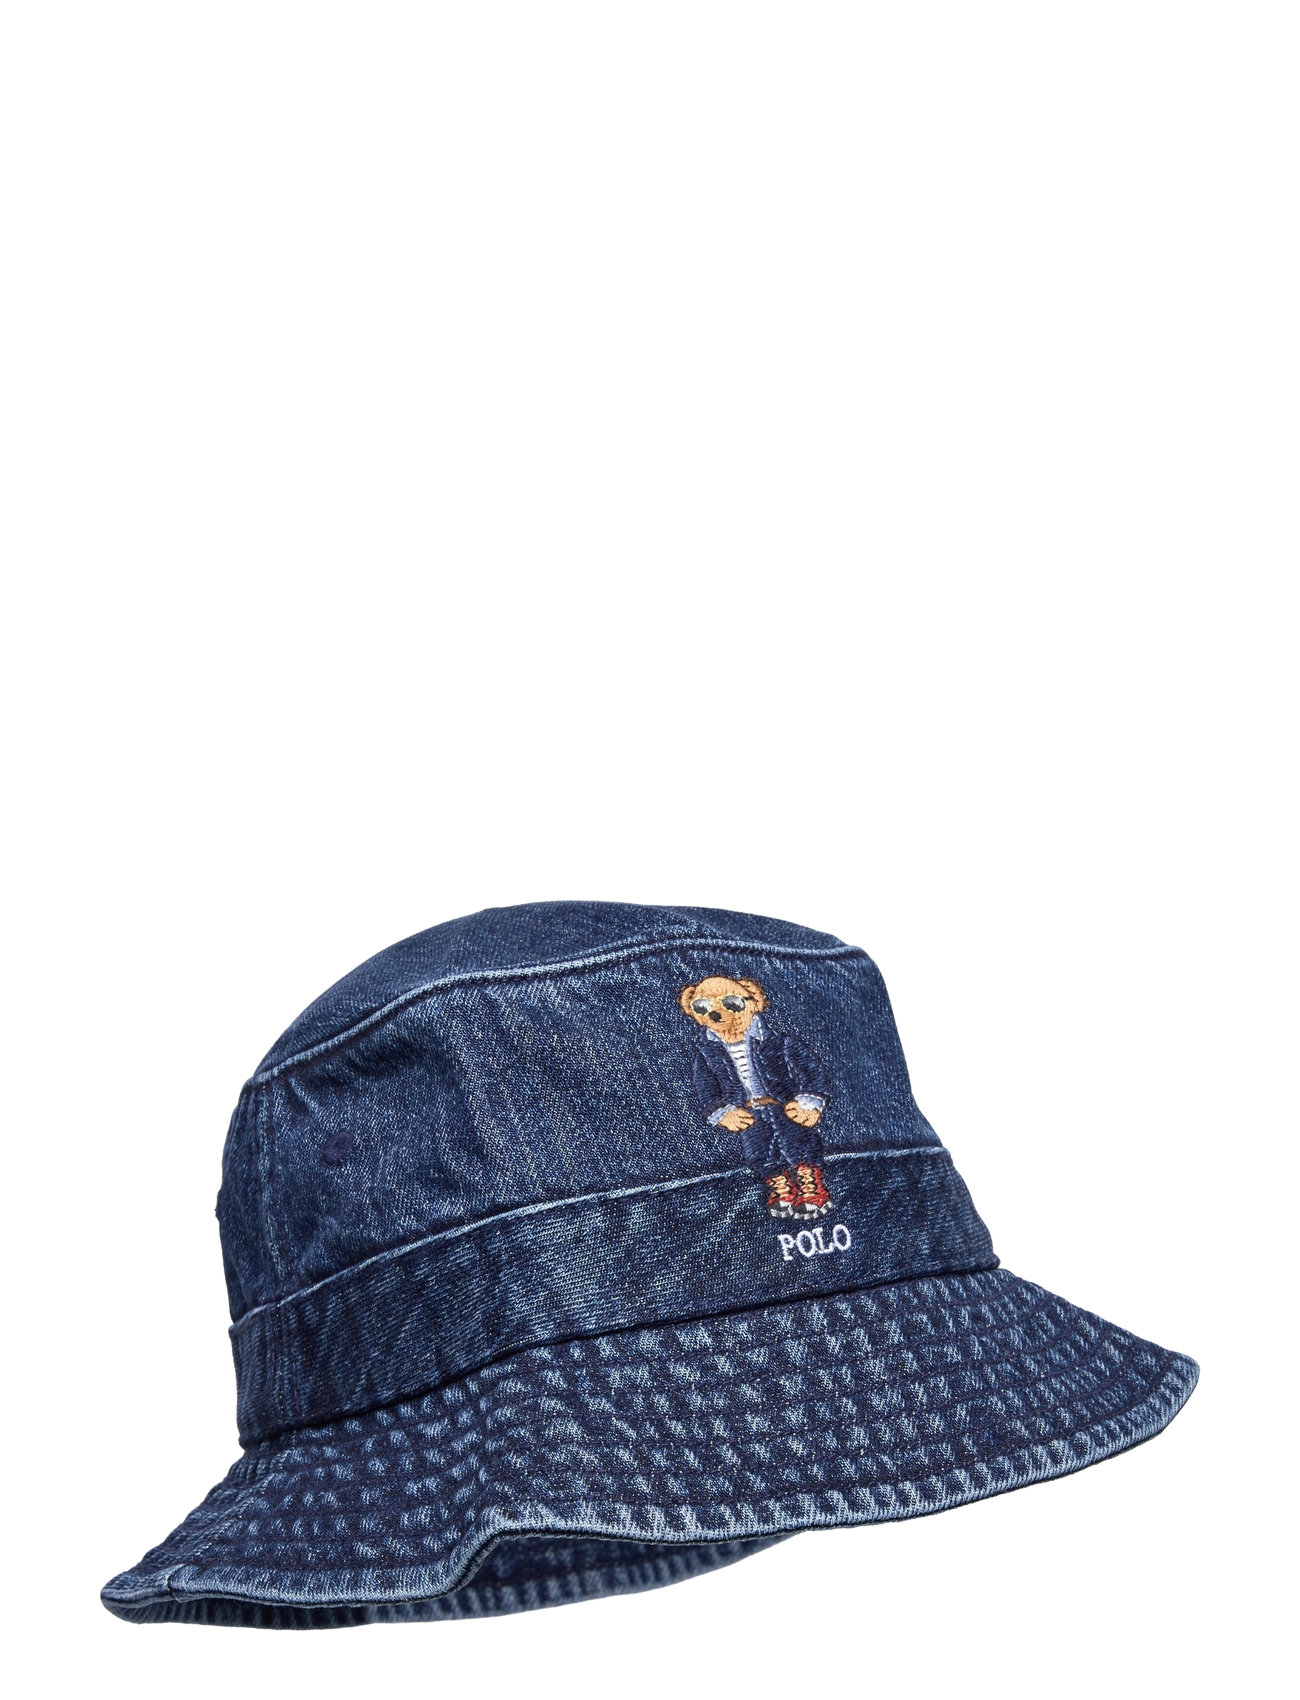 Polo Bear Denim Bucket Hat Accessories Headwear Bucket Hats Blue Polo Ralph Lauren